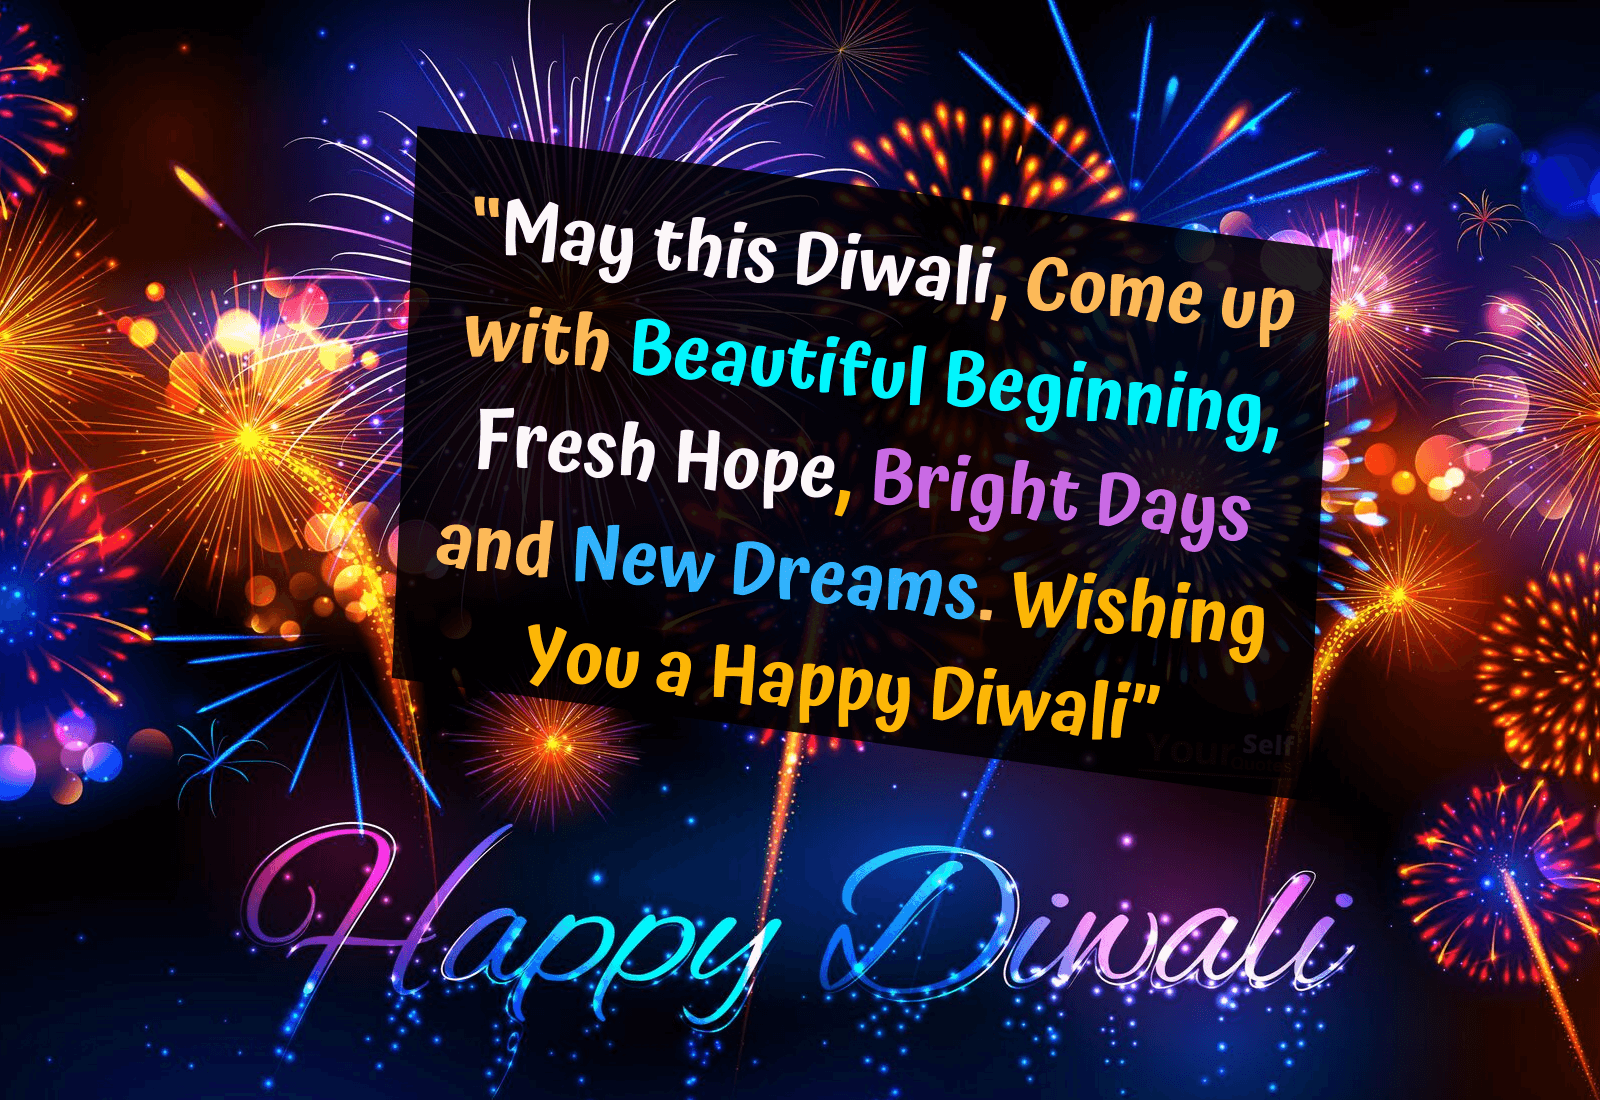 Best Diwali Wishes